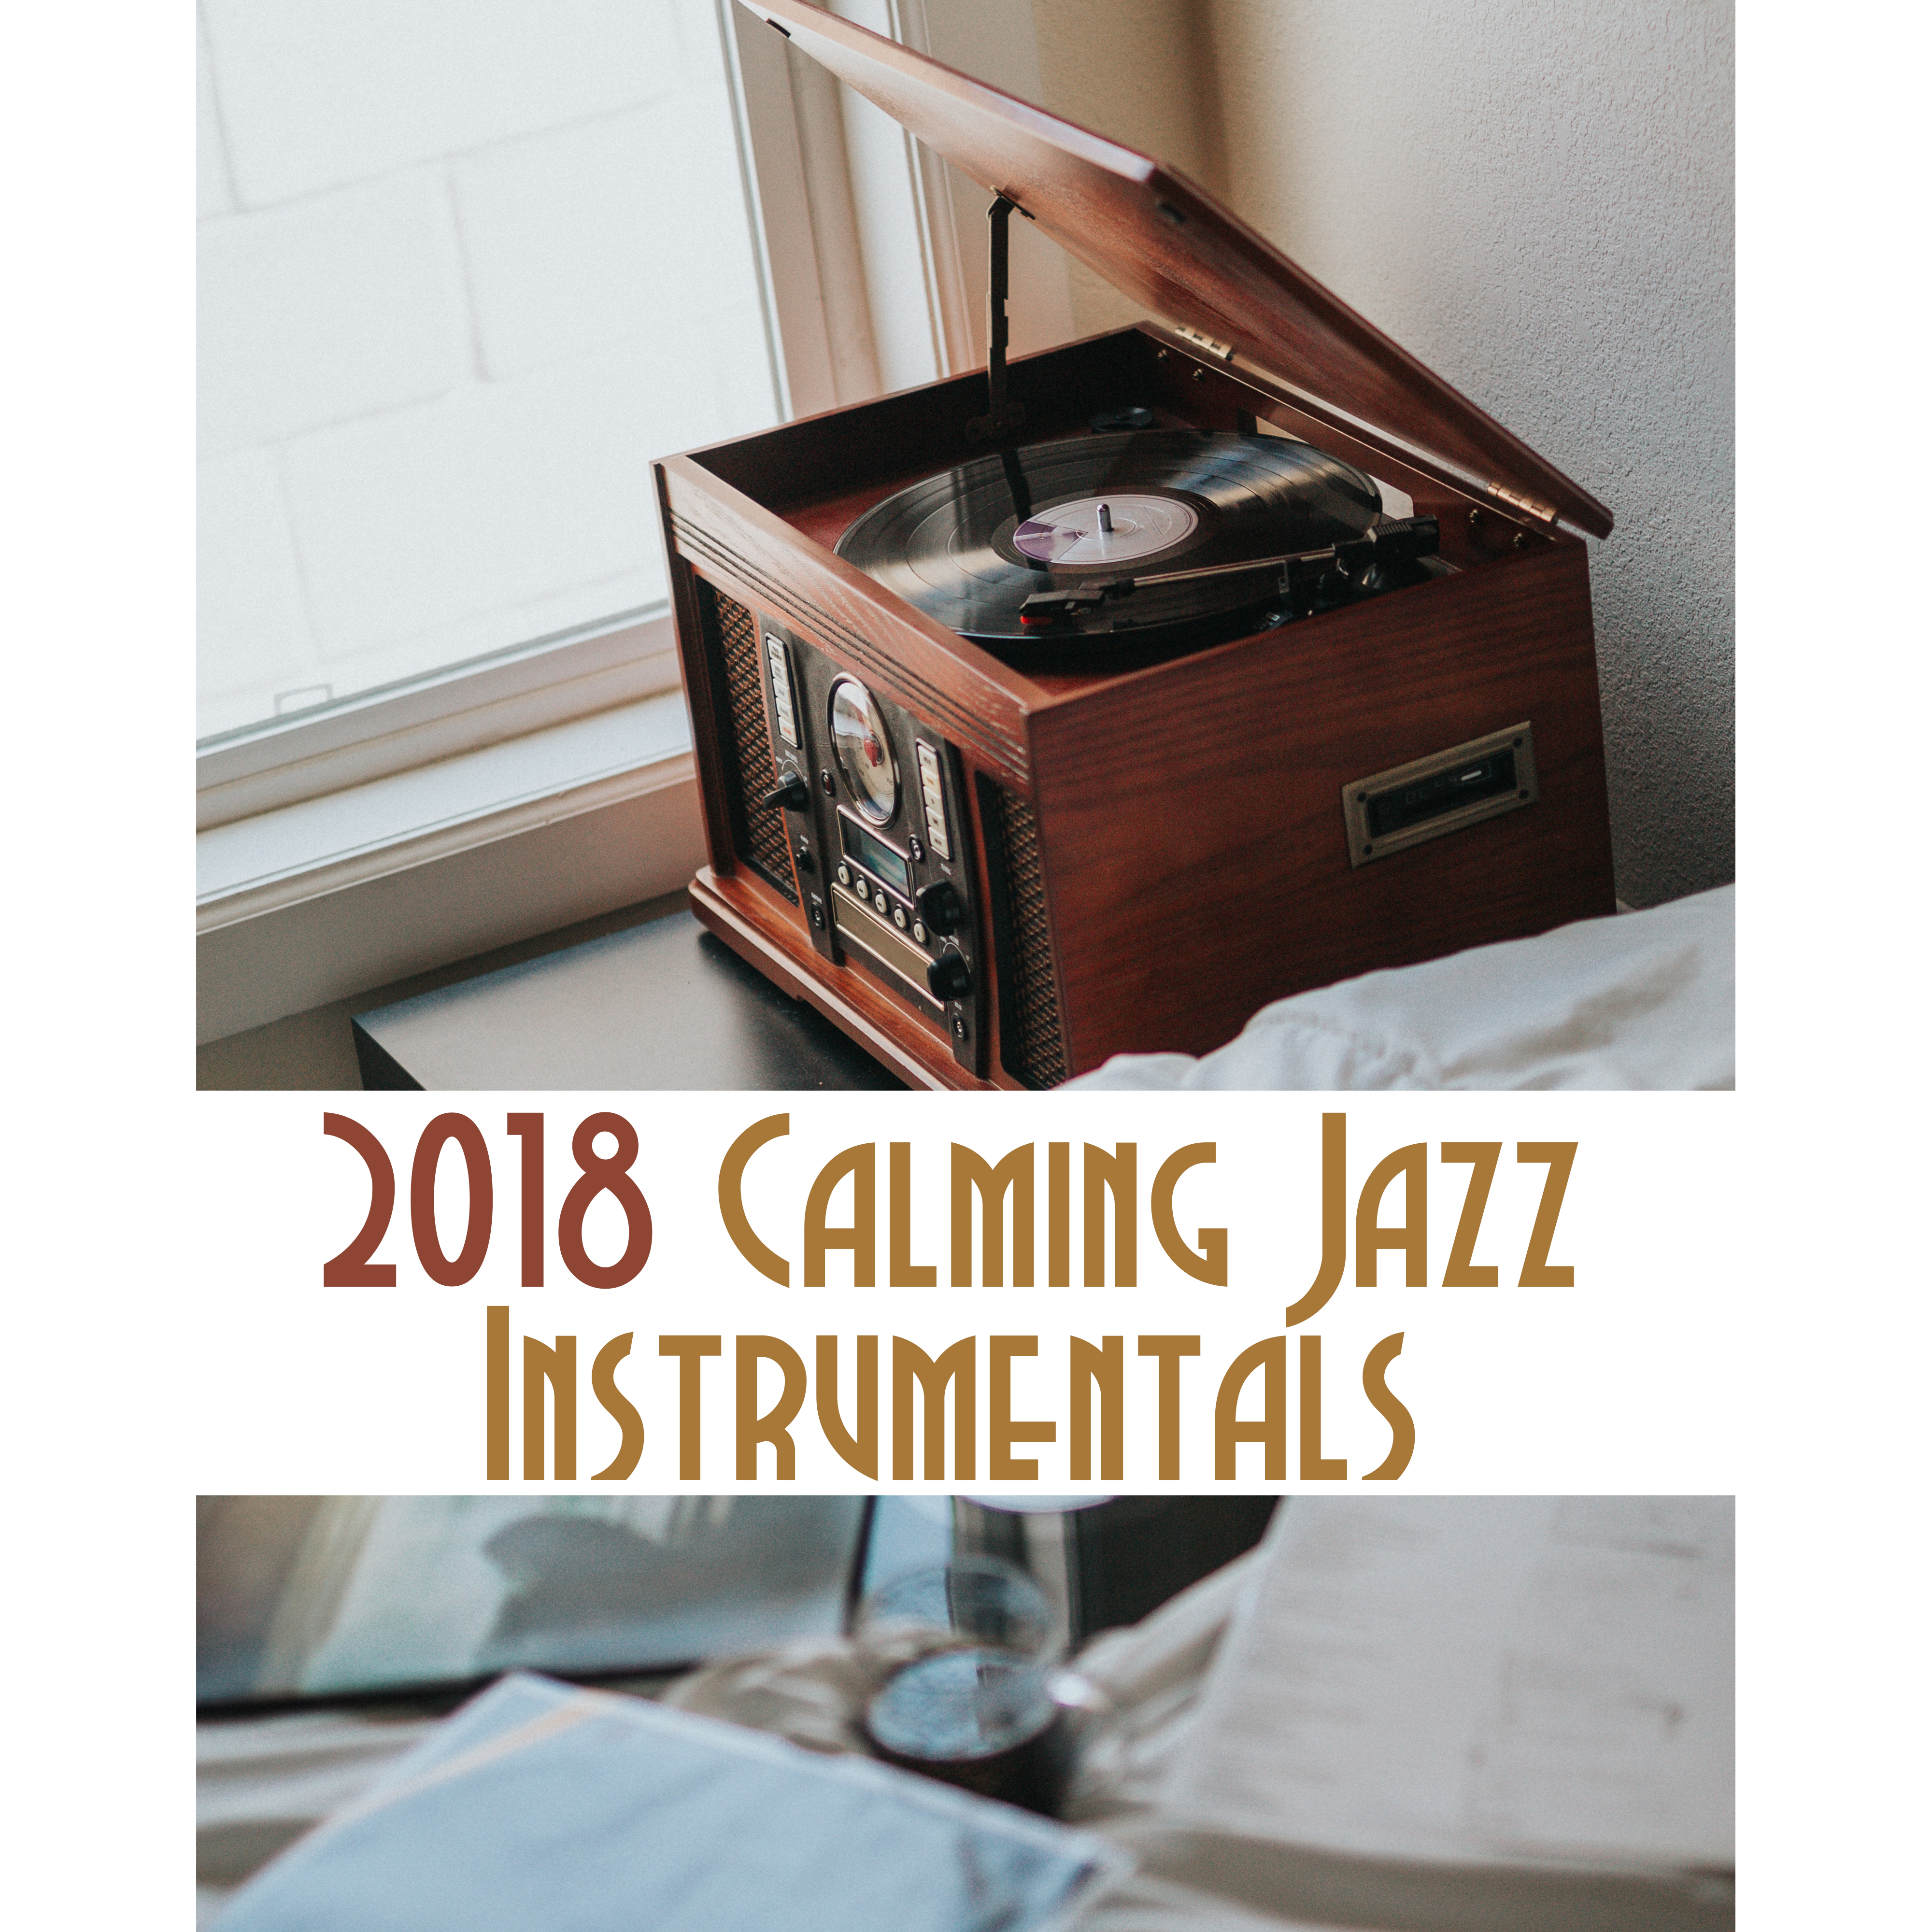 2018 Calming Jazz Instrumentals